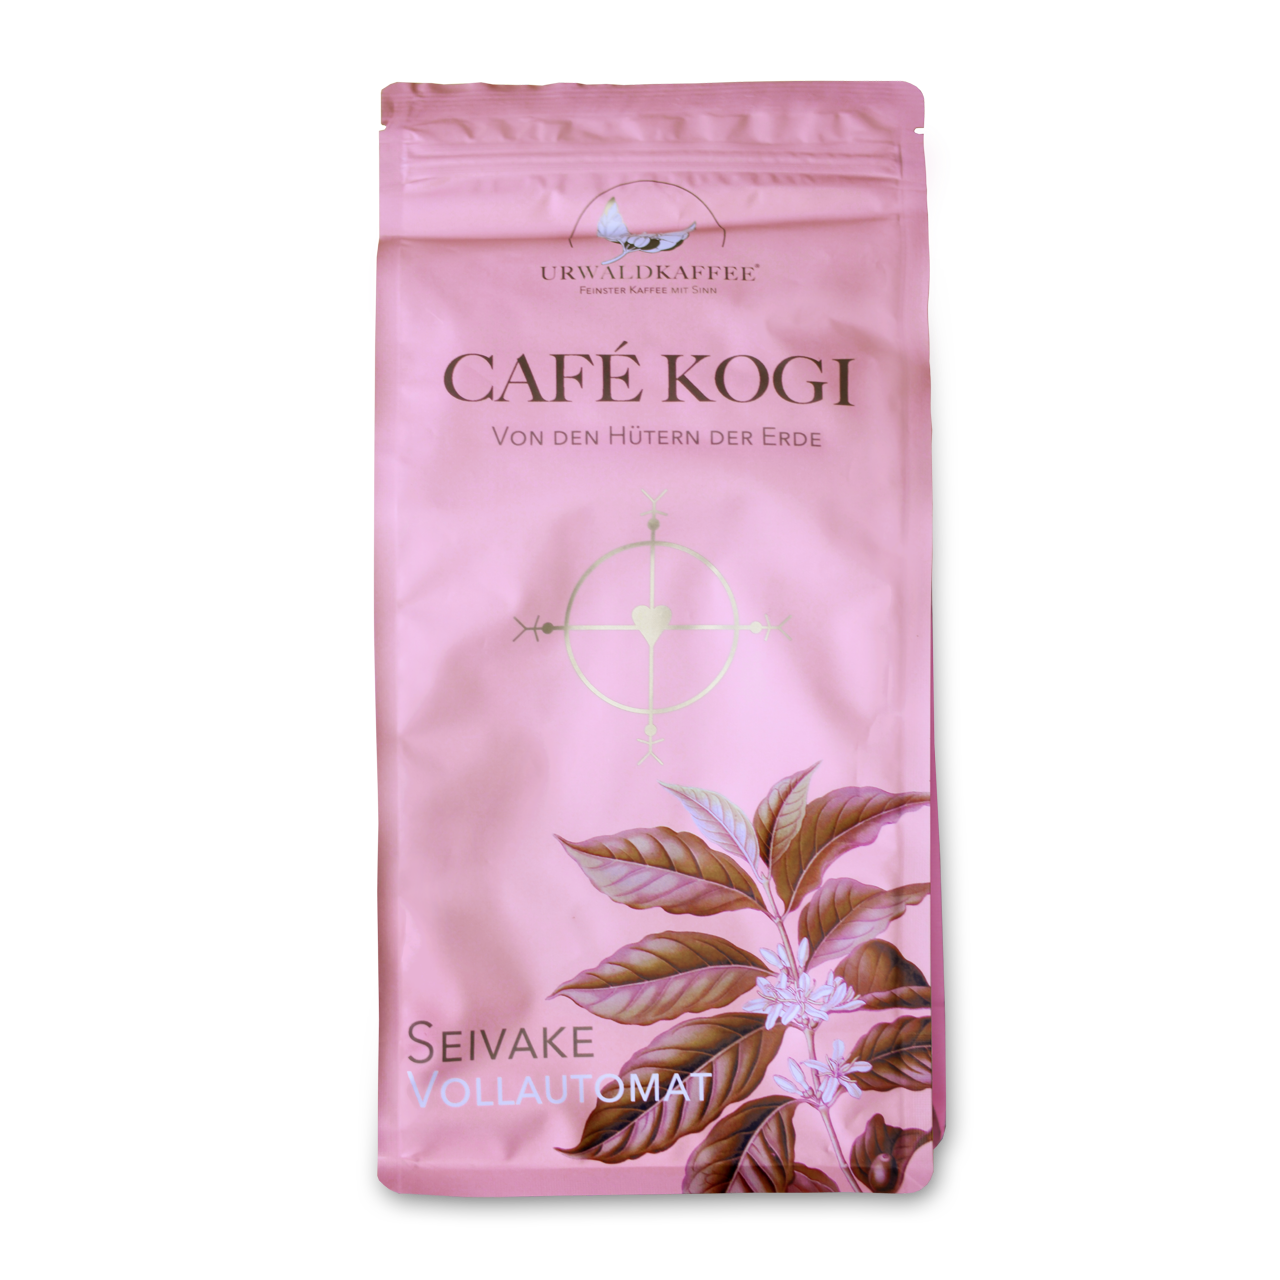 Café Kogi - Seivake, ganze Bohne 1 kg